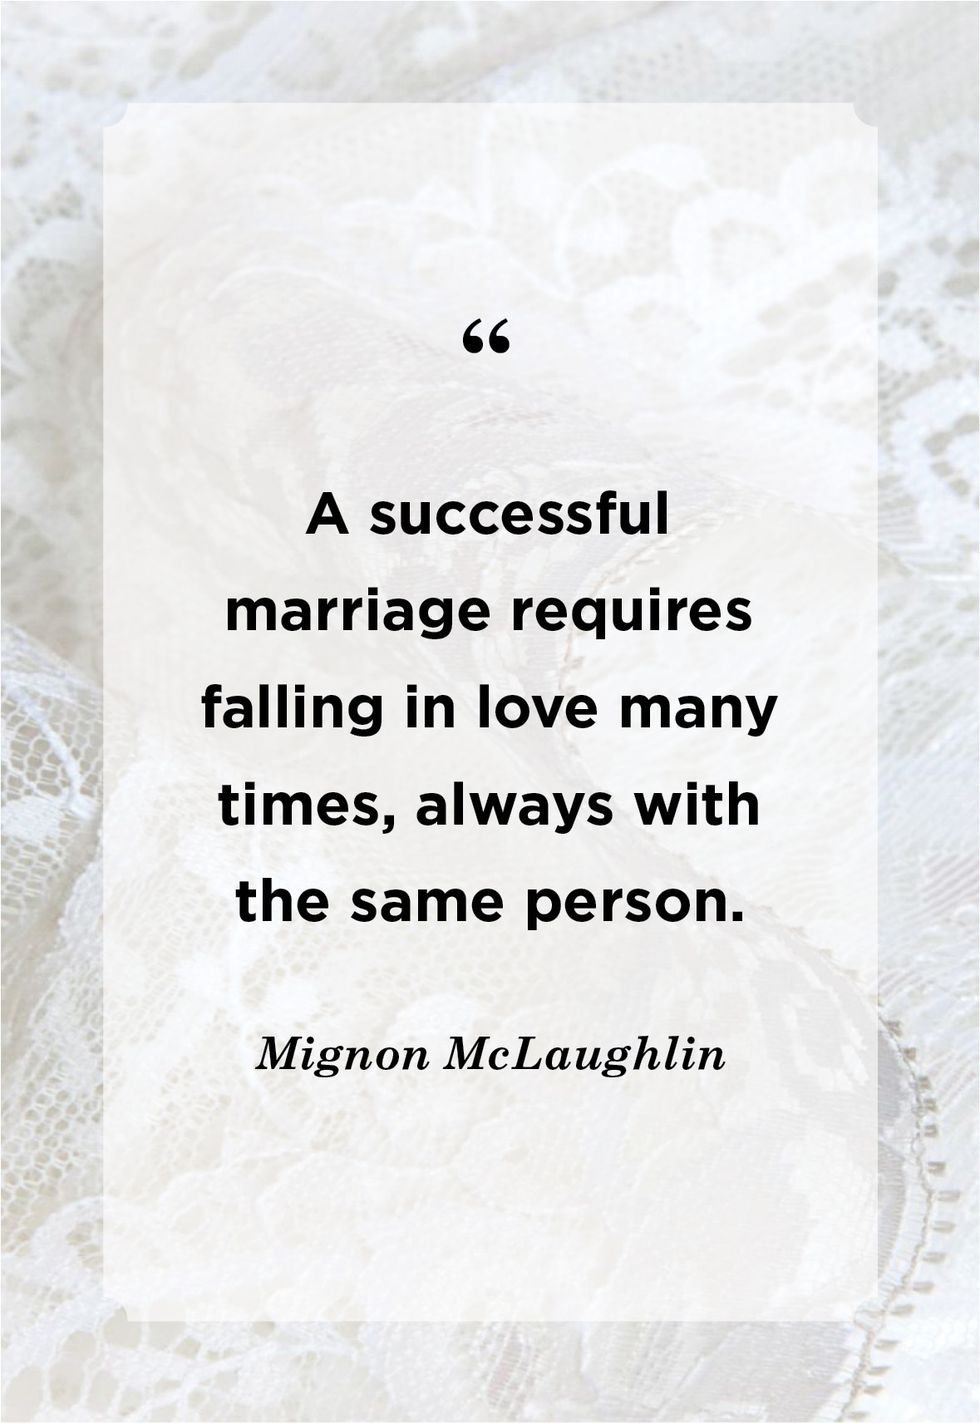 mignon mclaughlin funny wedding quote